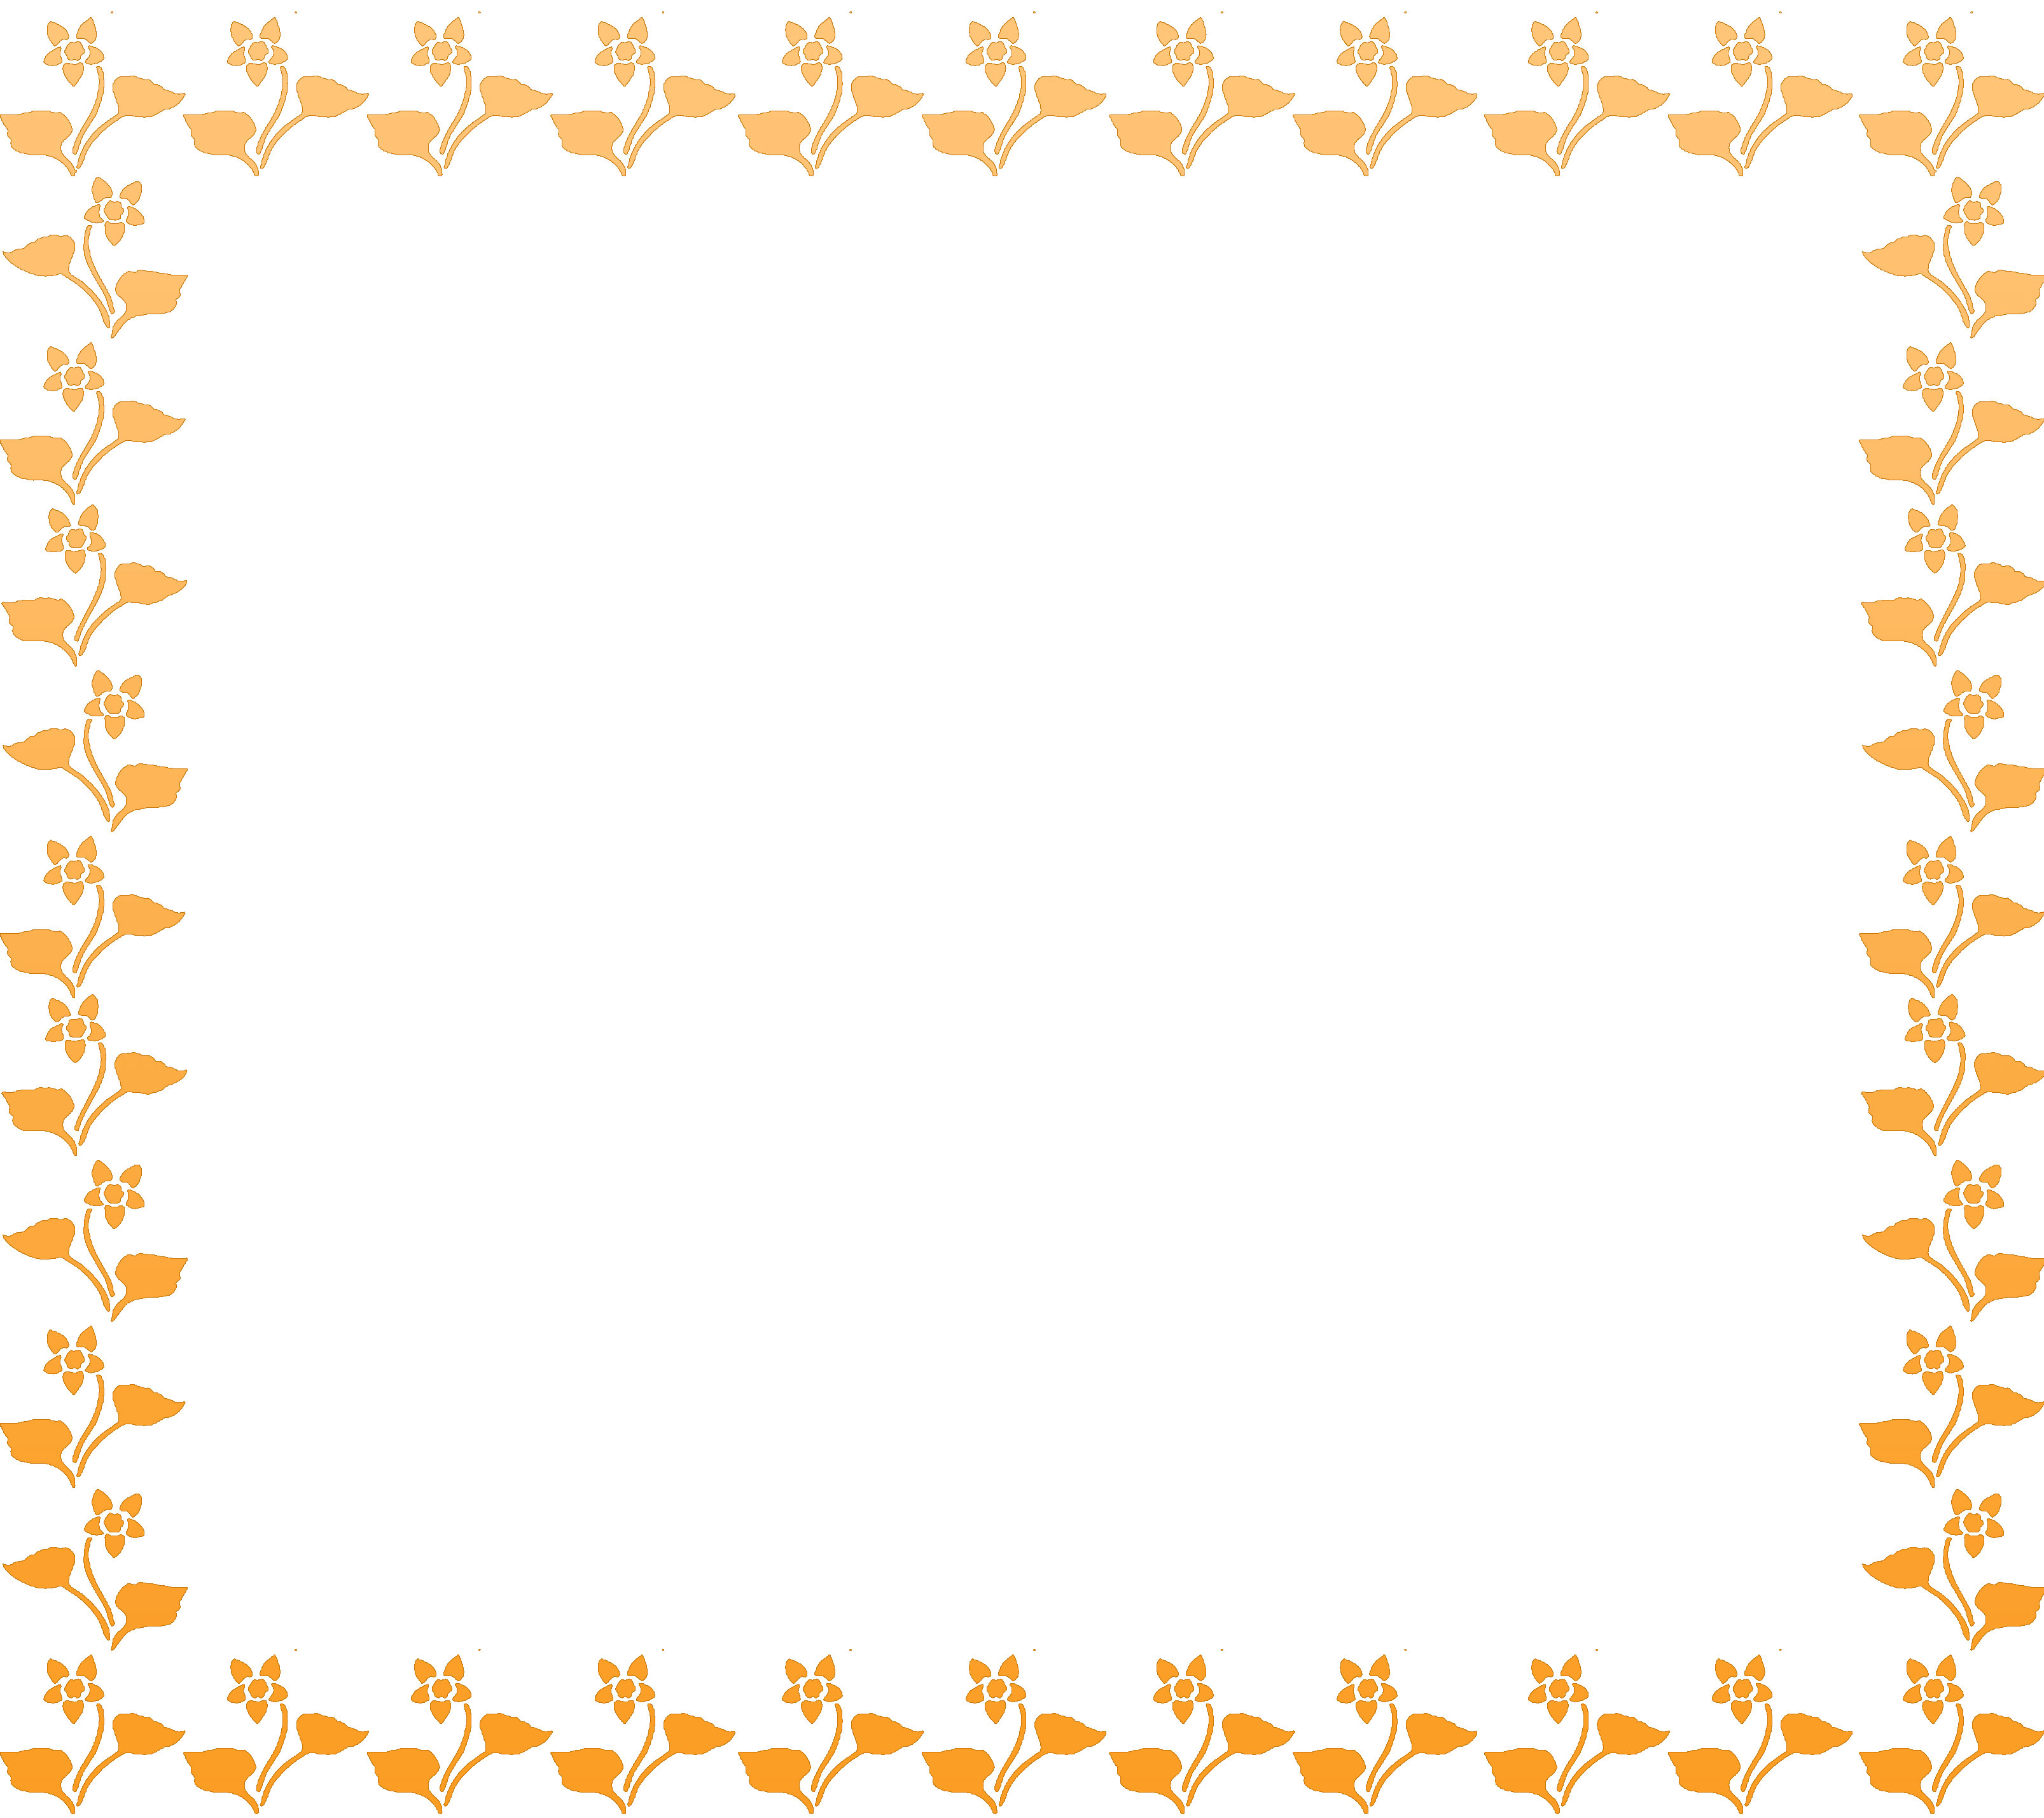 オレンジ色の花のイラスト フリー素材 No 191 オレンジの花の窓